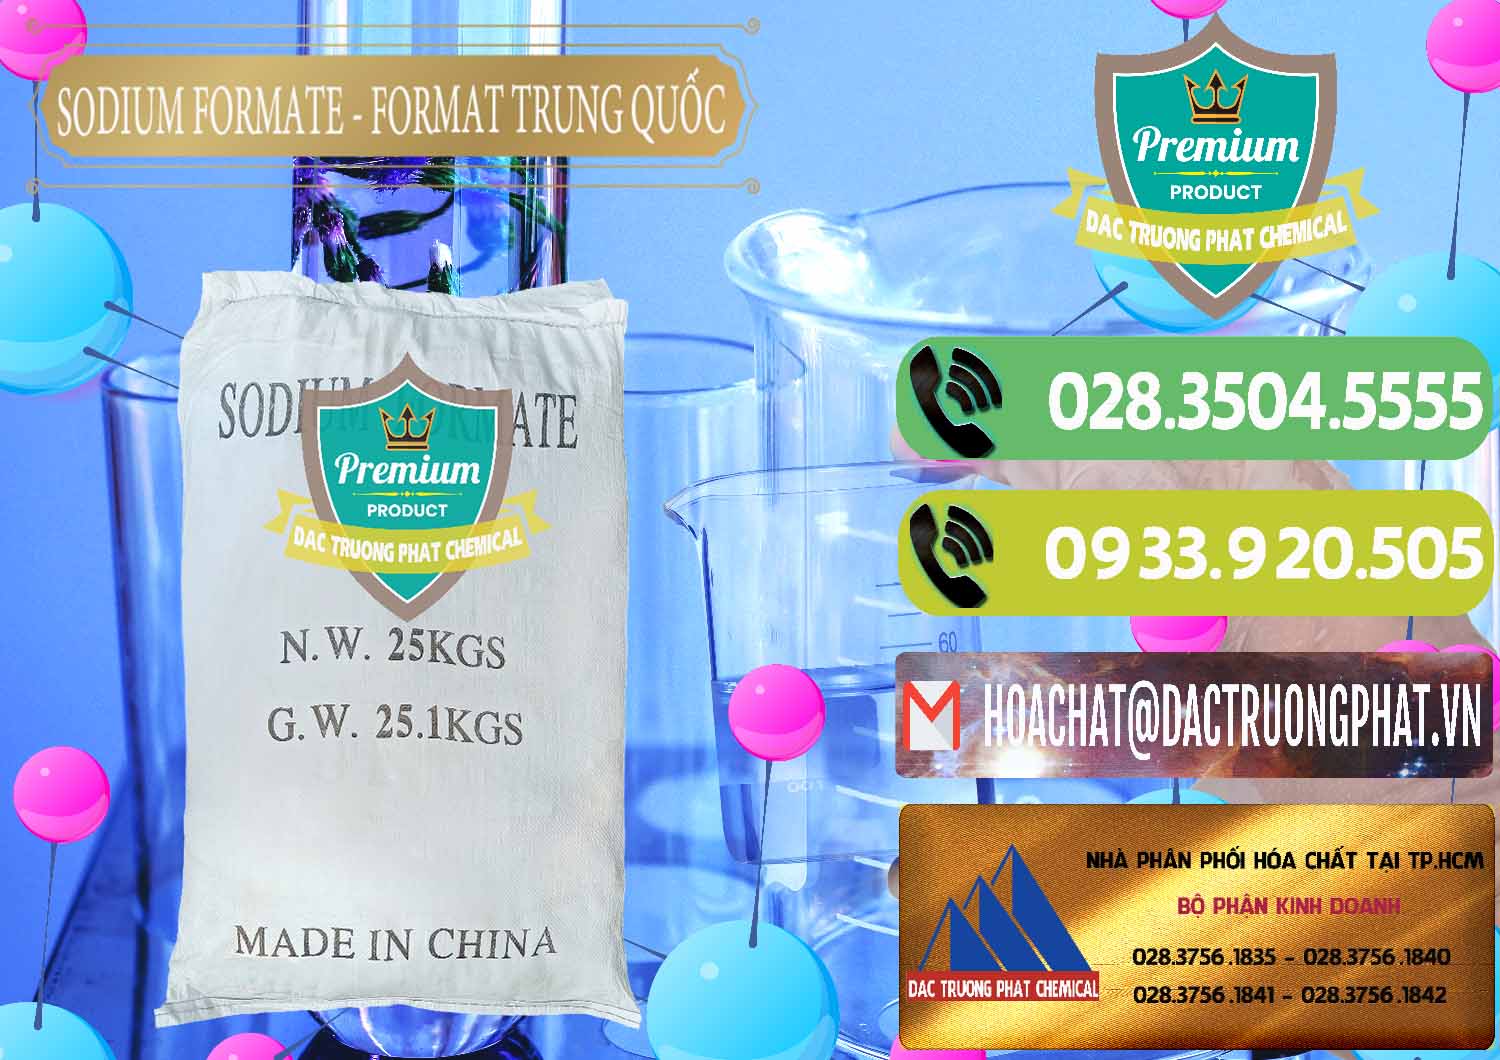 Đơn vị chuyên bán và cung cấp Sodium Formate - Natri Format Trung Quốc China - 0142 - Cty chuyên bán và phân phối hóa chất tại TP.HCM - hoachatmientay.vn